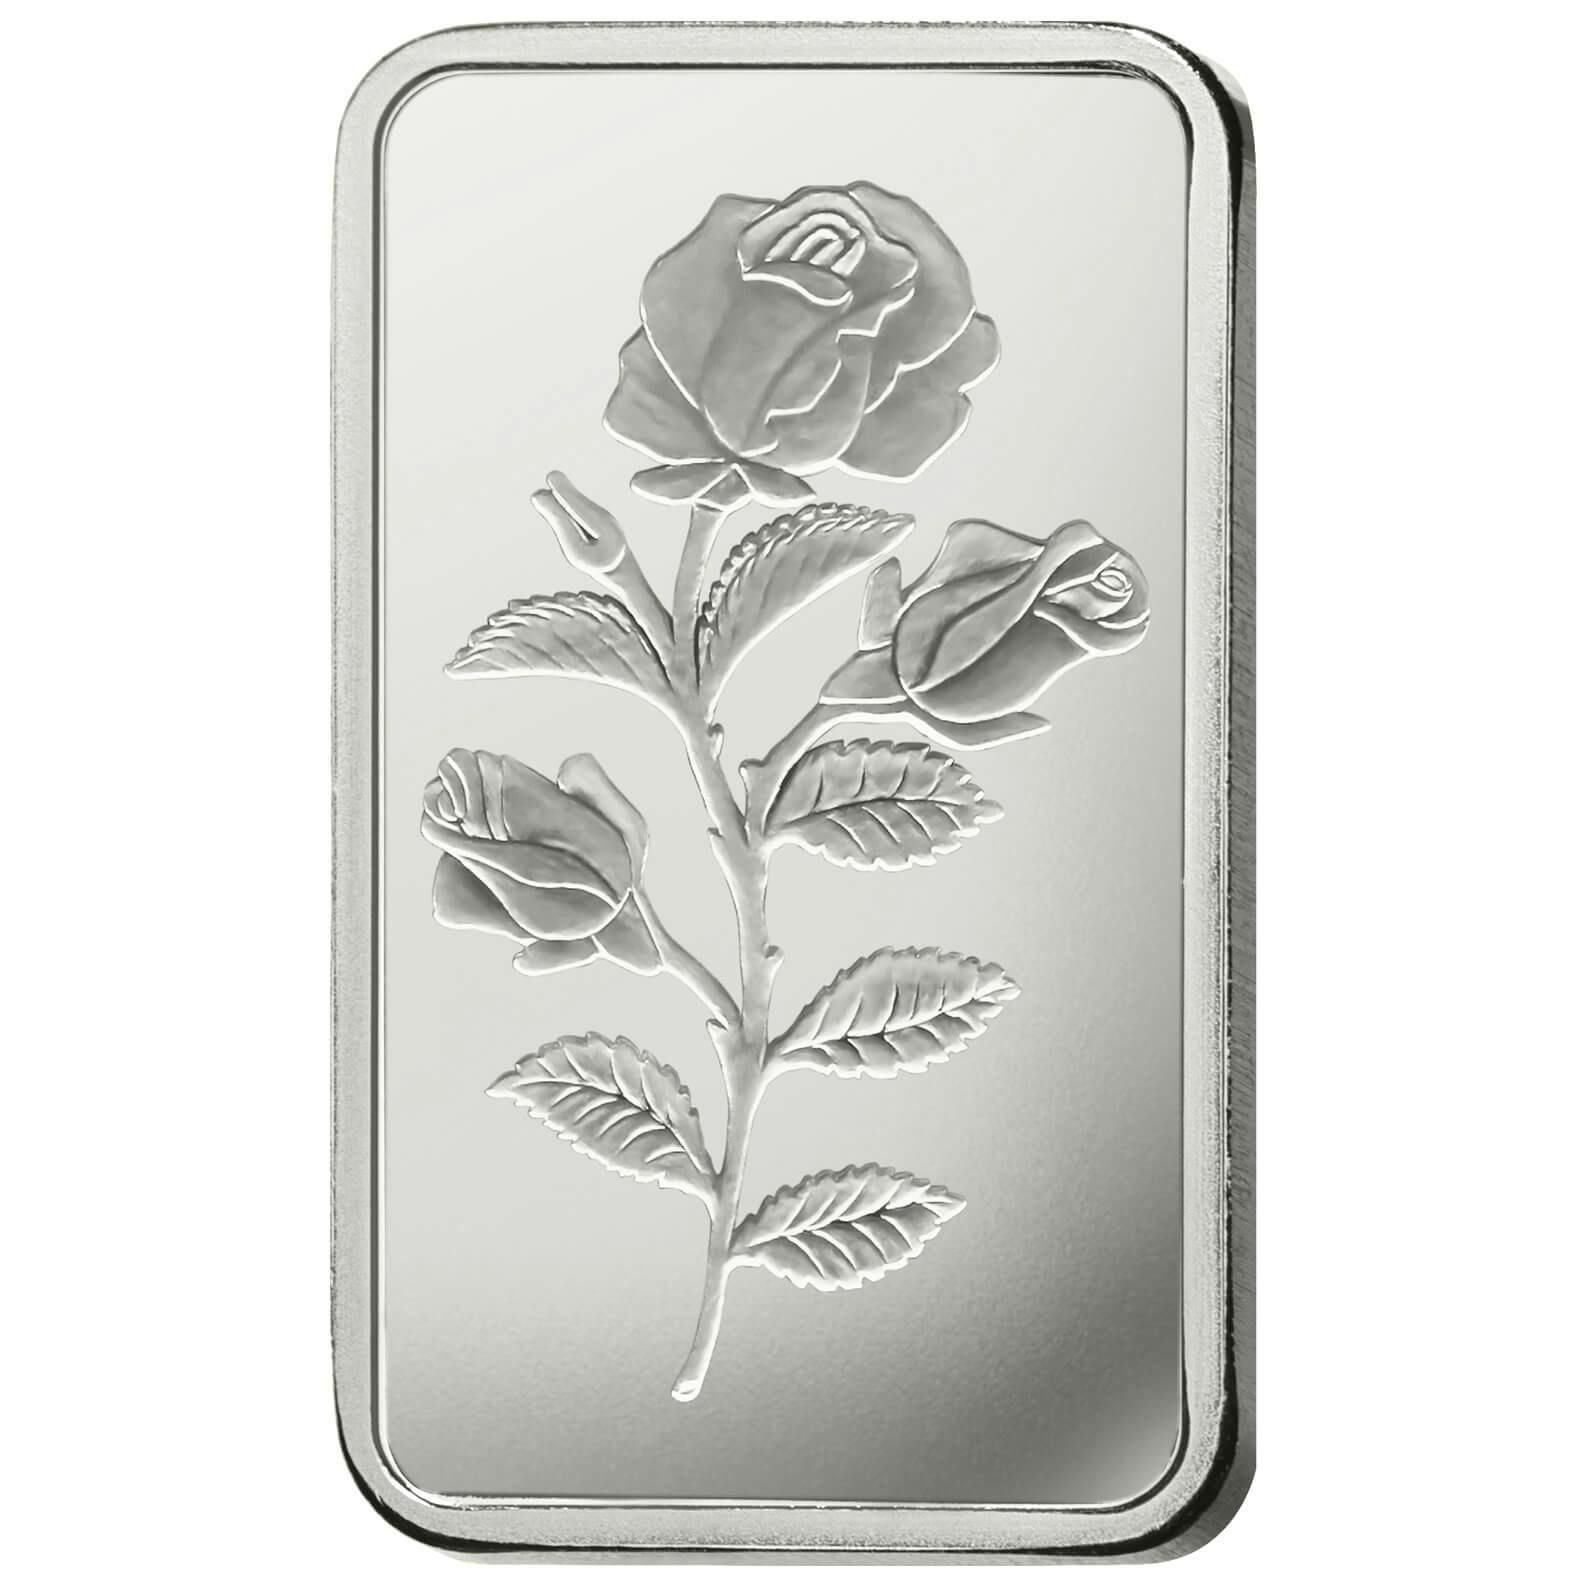 Compare argento, 20 grammi d'argento puro Rosa - PAMP Svizzera - Front